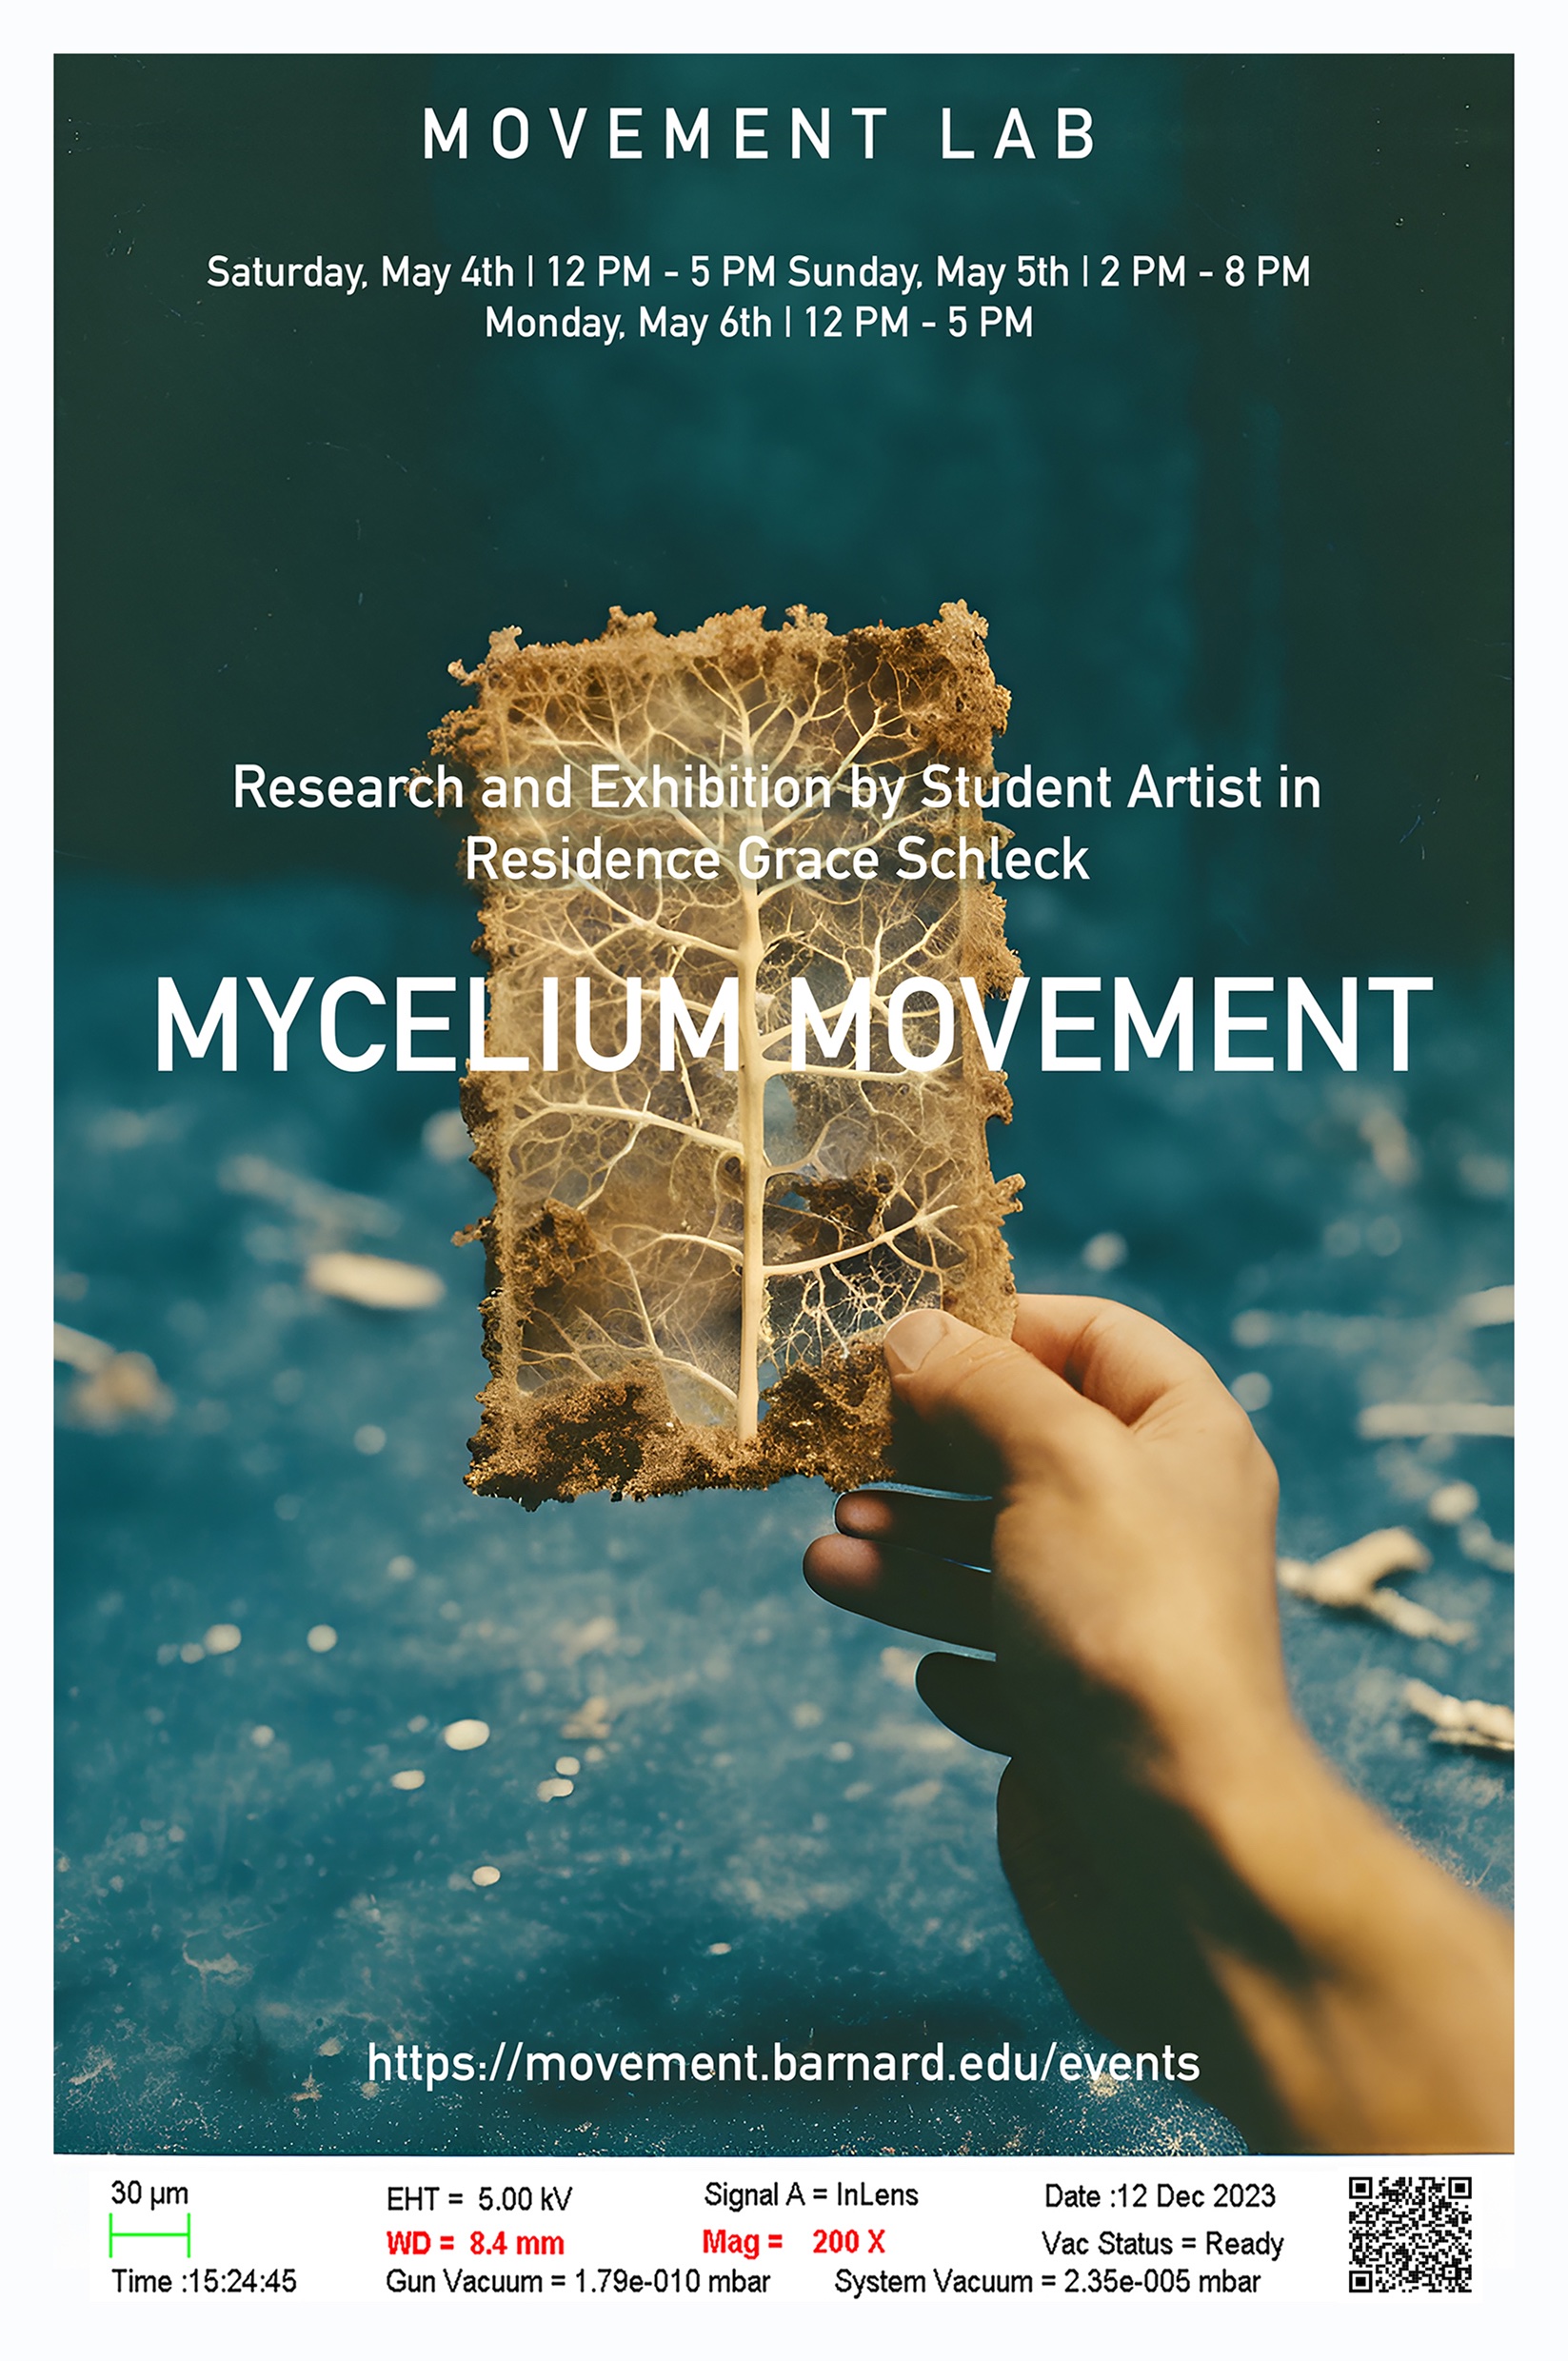 Mycelium Movement